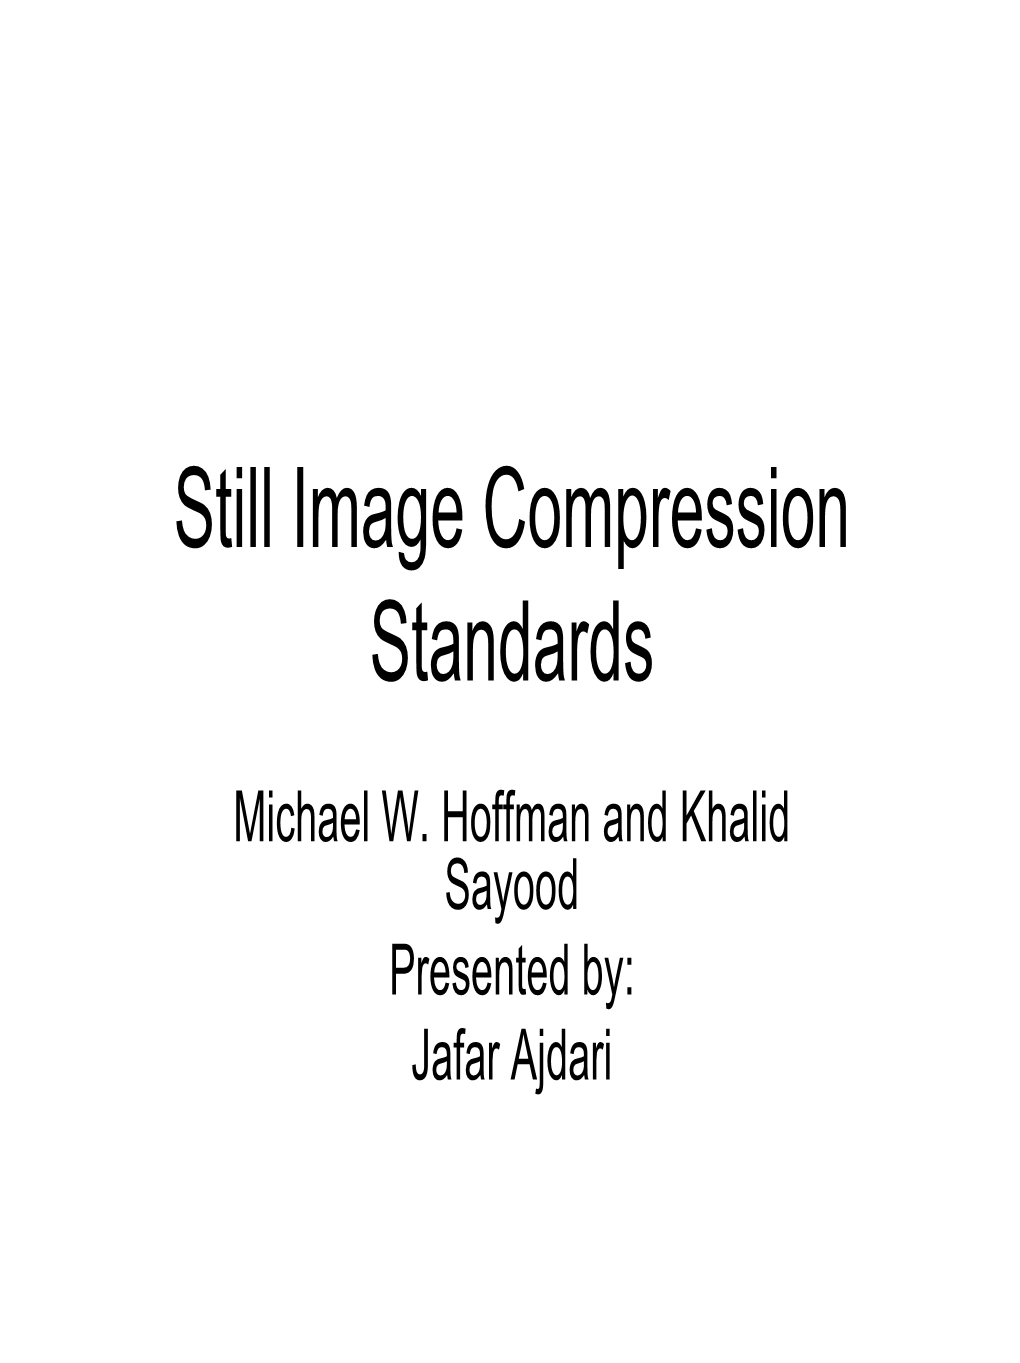 Still Image Compression Standards